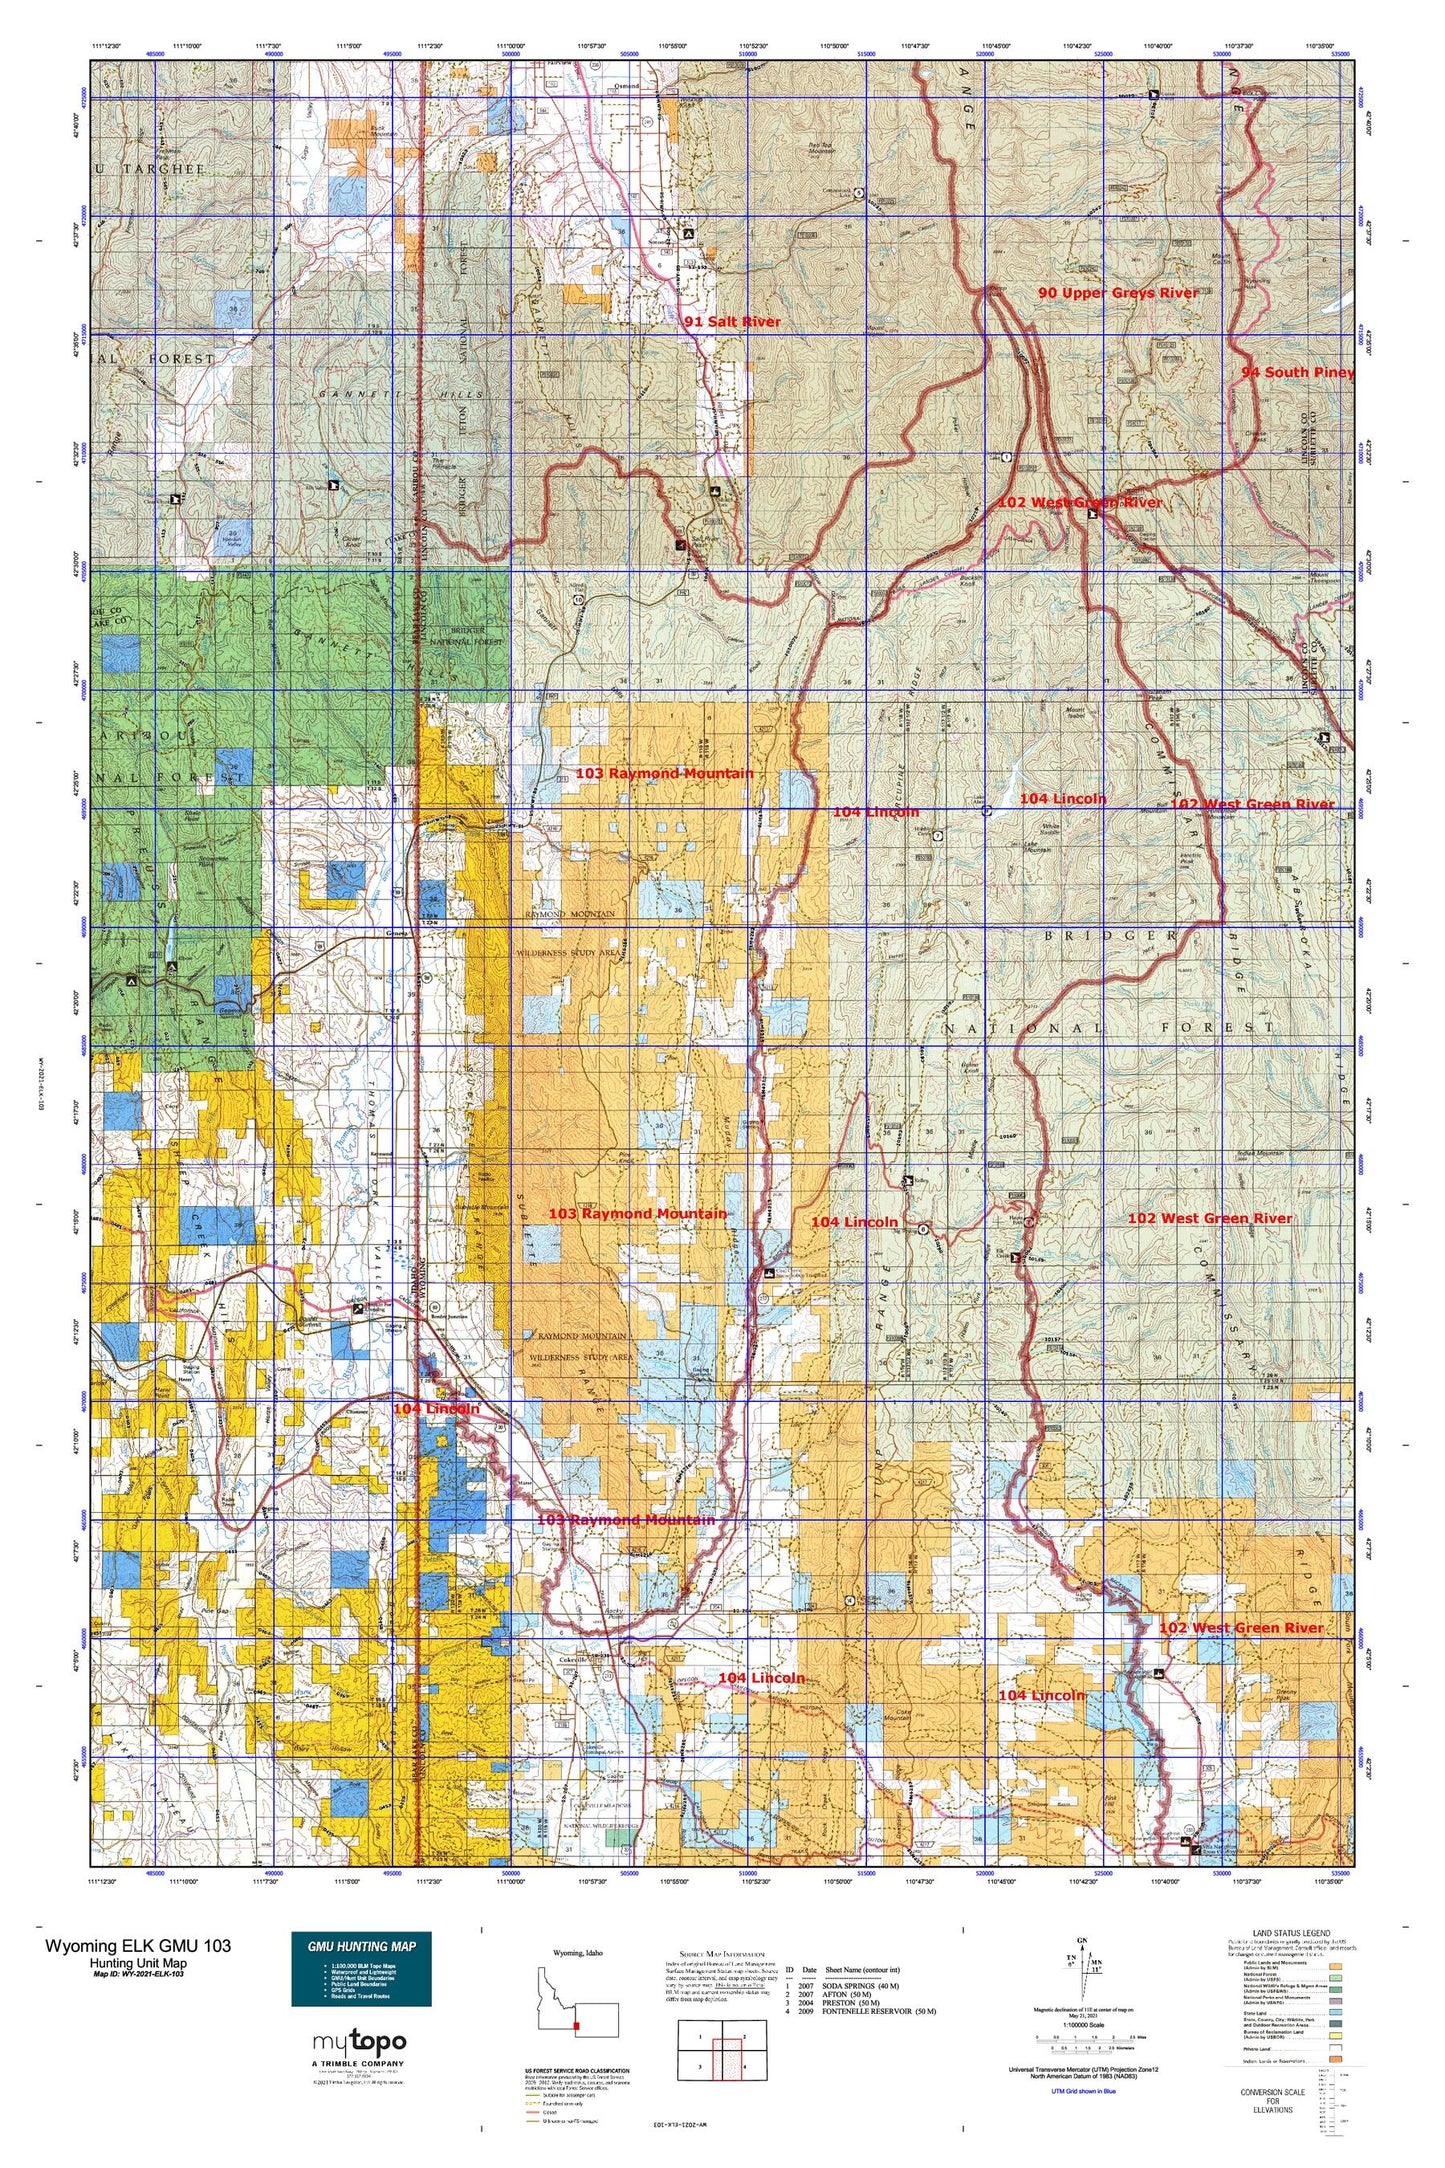 Wyoming Elk GMU 103 Map Image